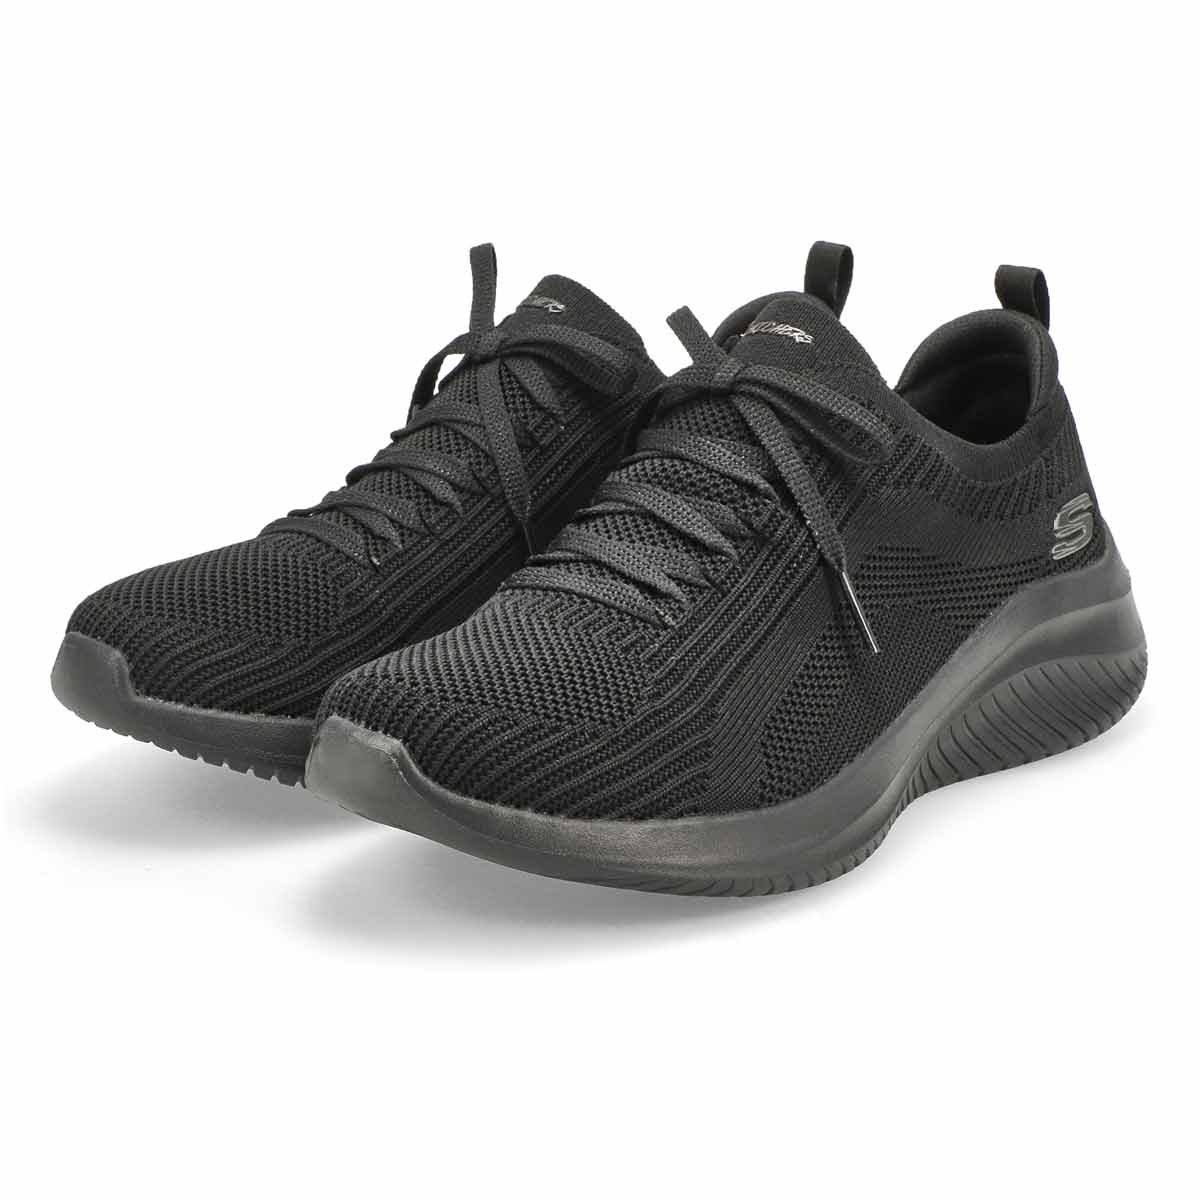 Women's Ultra Flex 3.0 Sneaker - Black